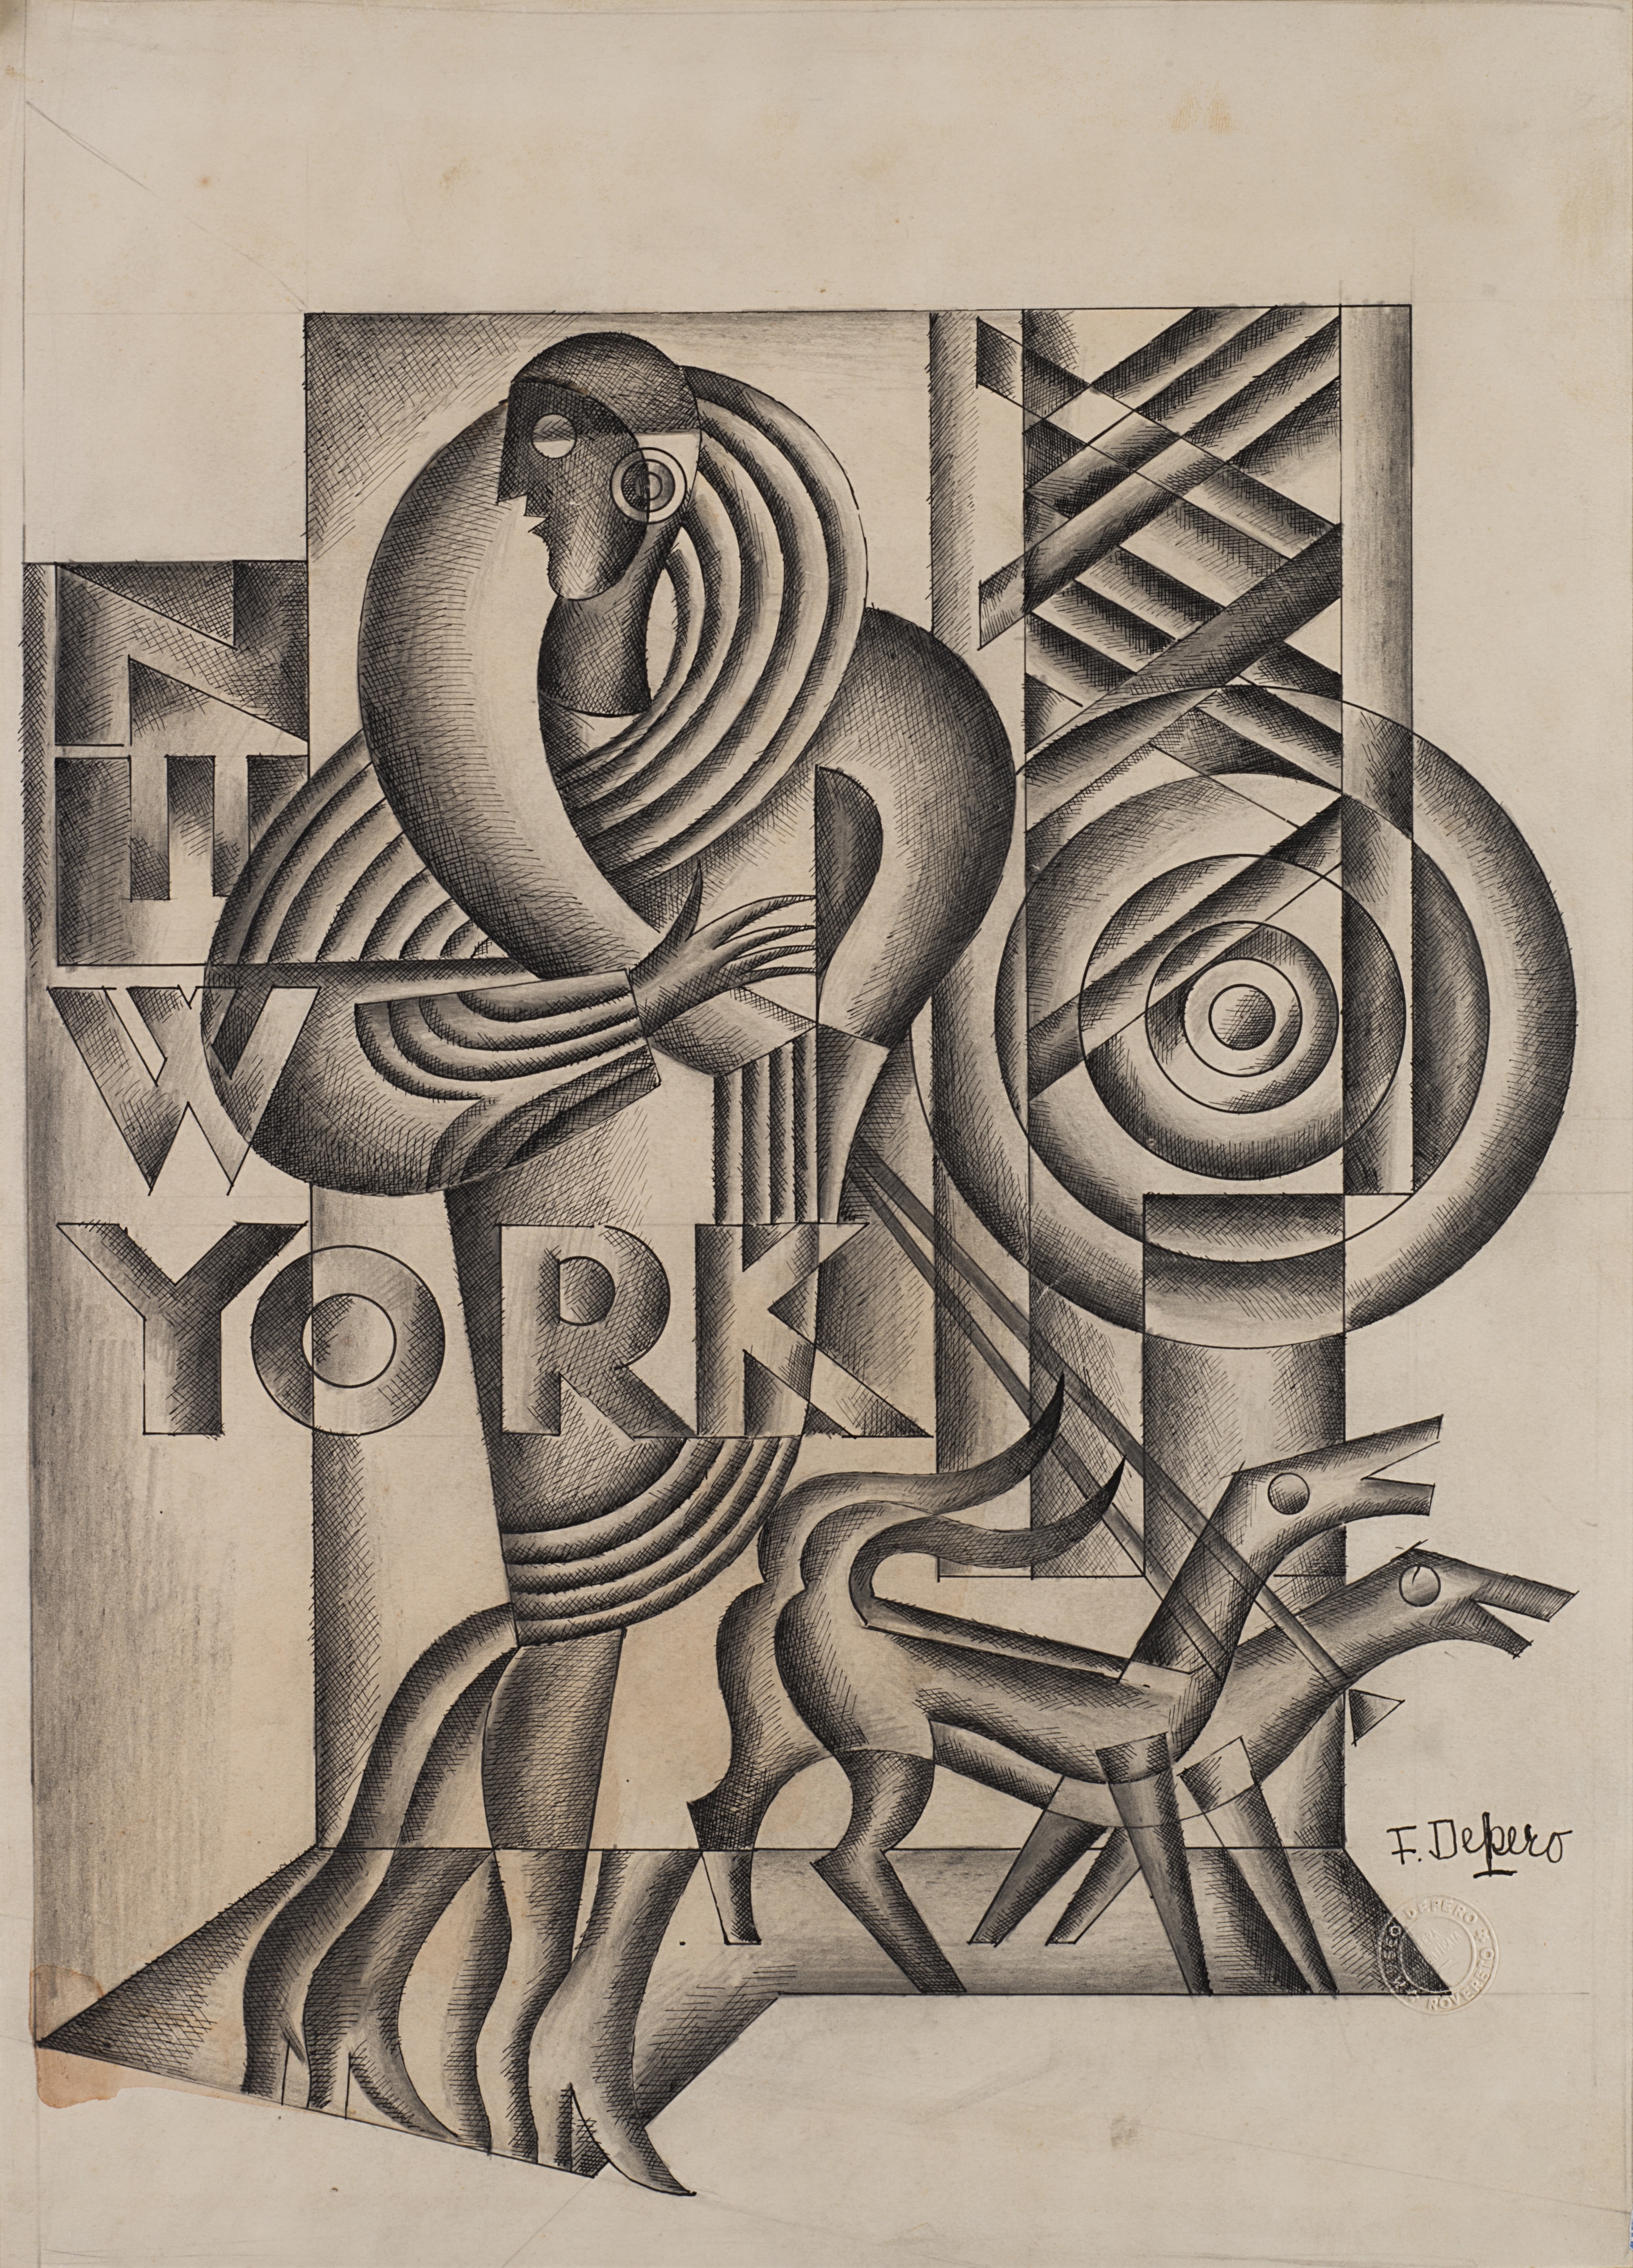 New York by Fortunato Depero, circa 1928